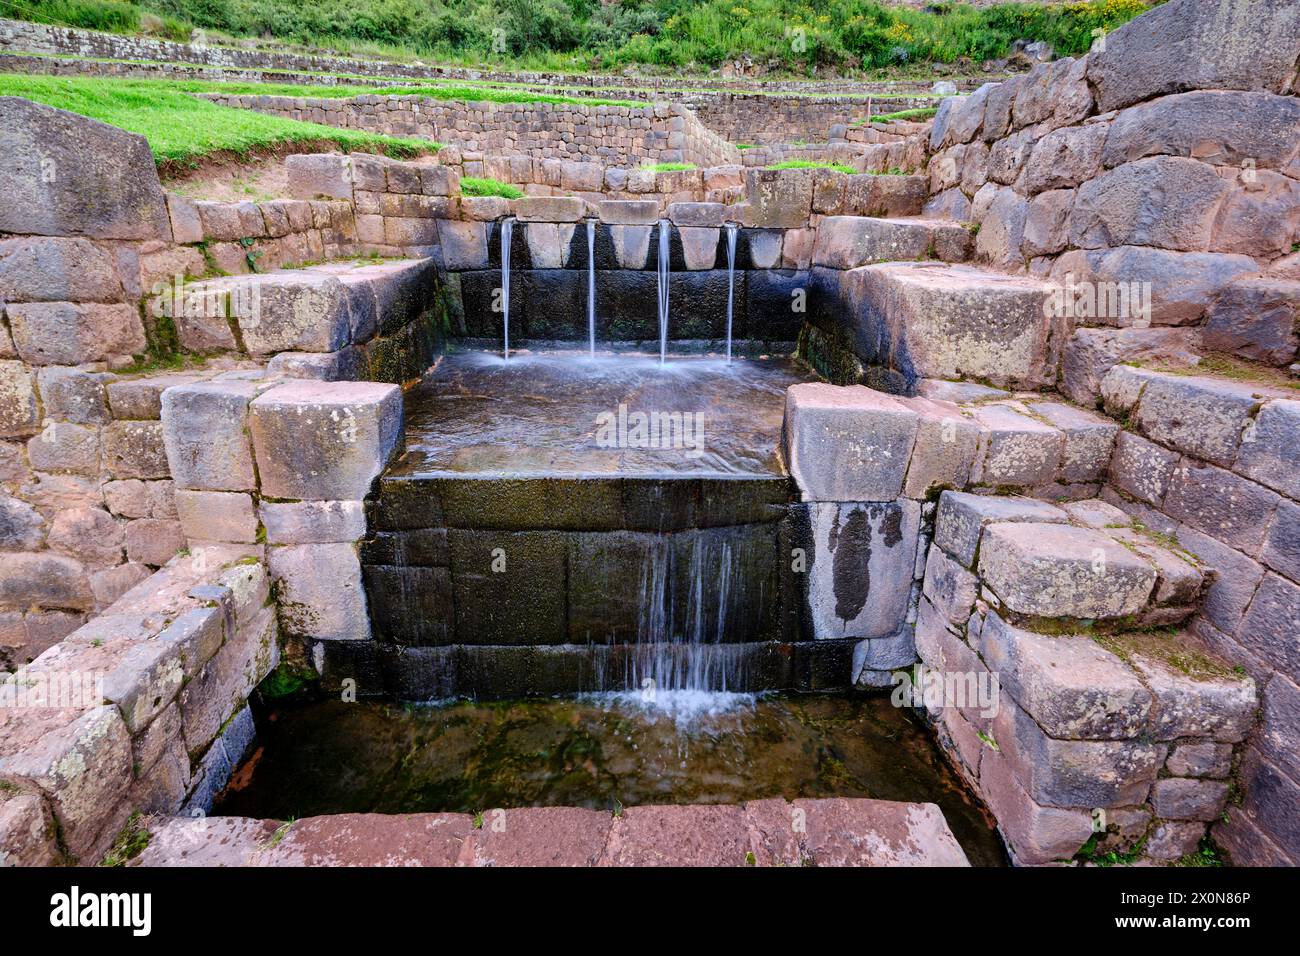 Perù, provincia di Cuzco, Tipon, sito archeologico inca dedicato all'acqua che fornisce 12 terrazze grazie ad un ingegnoso sistema di tubazioni Foto Stock